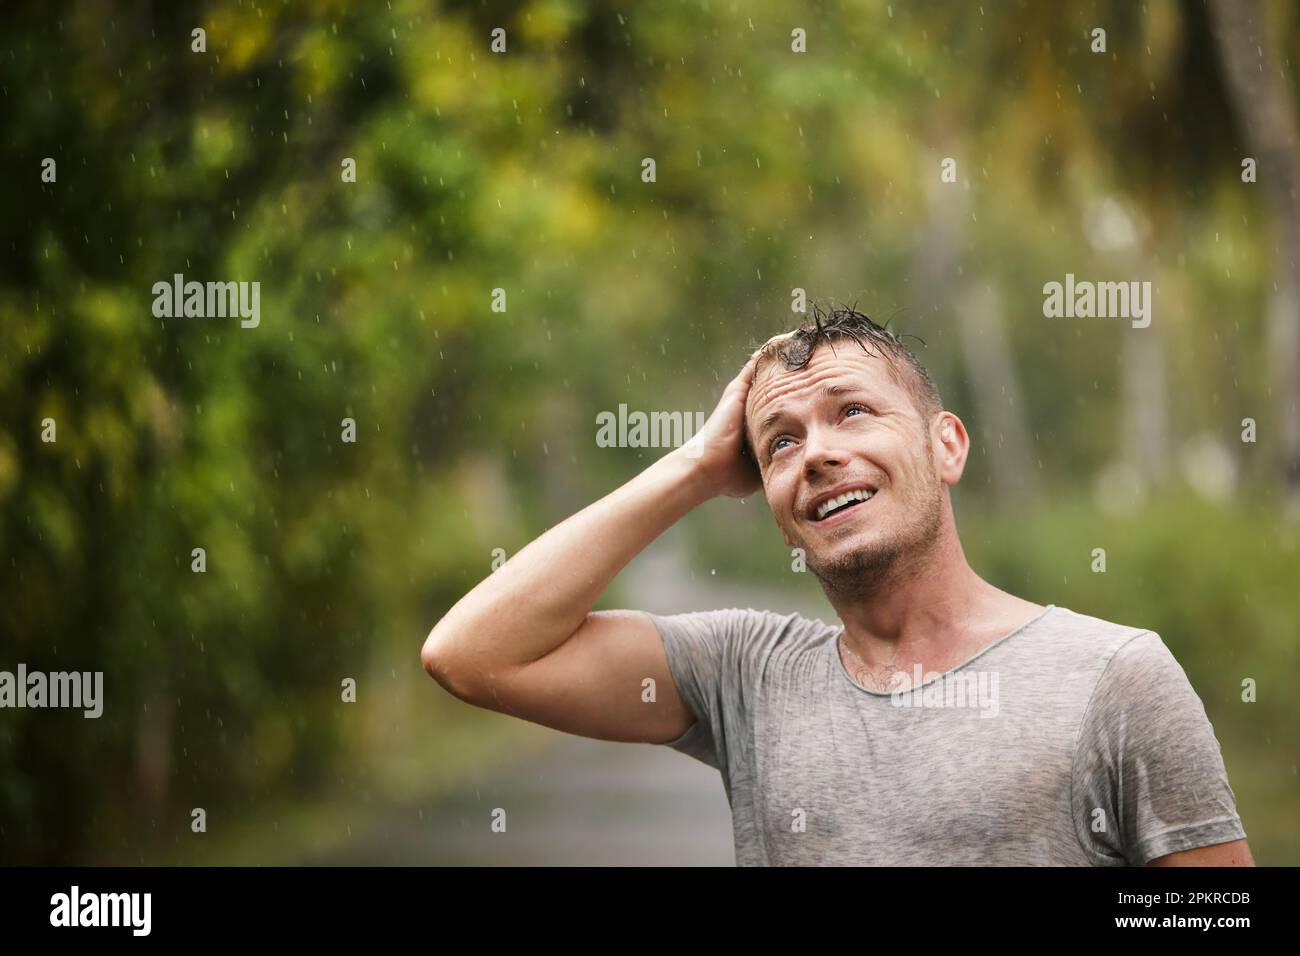 Porträt des Menschen in nasser Kleidung, der starken Regen in der Natur genießt. Themen des Lebens Wasser, Wetter und Umwelt. Stockfoto